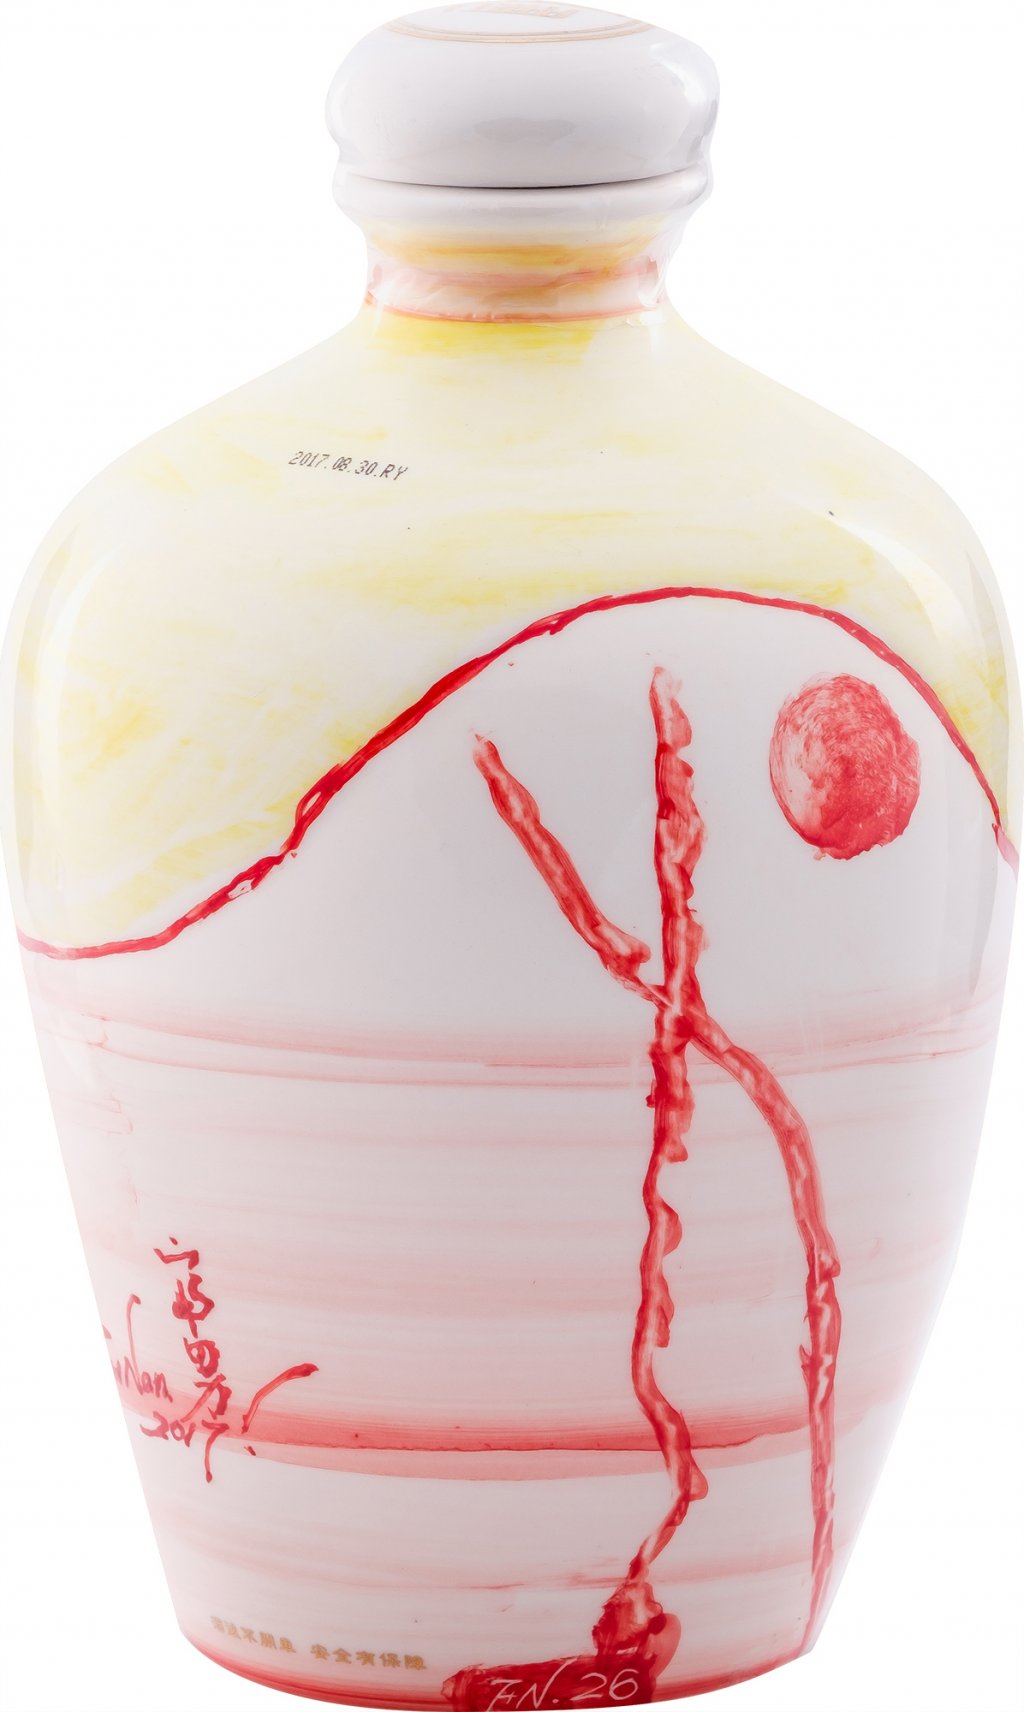 【台湘名家守正展】林富男 /<br>天地太極 | 書畫瓷瓶高粱酒